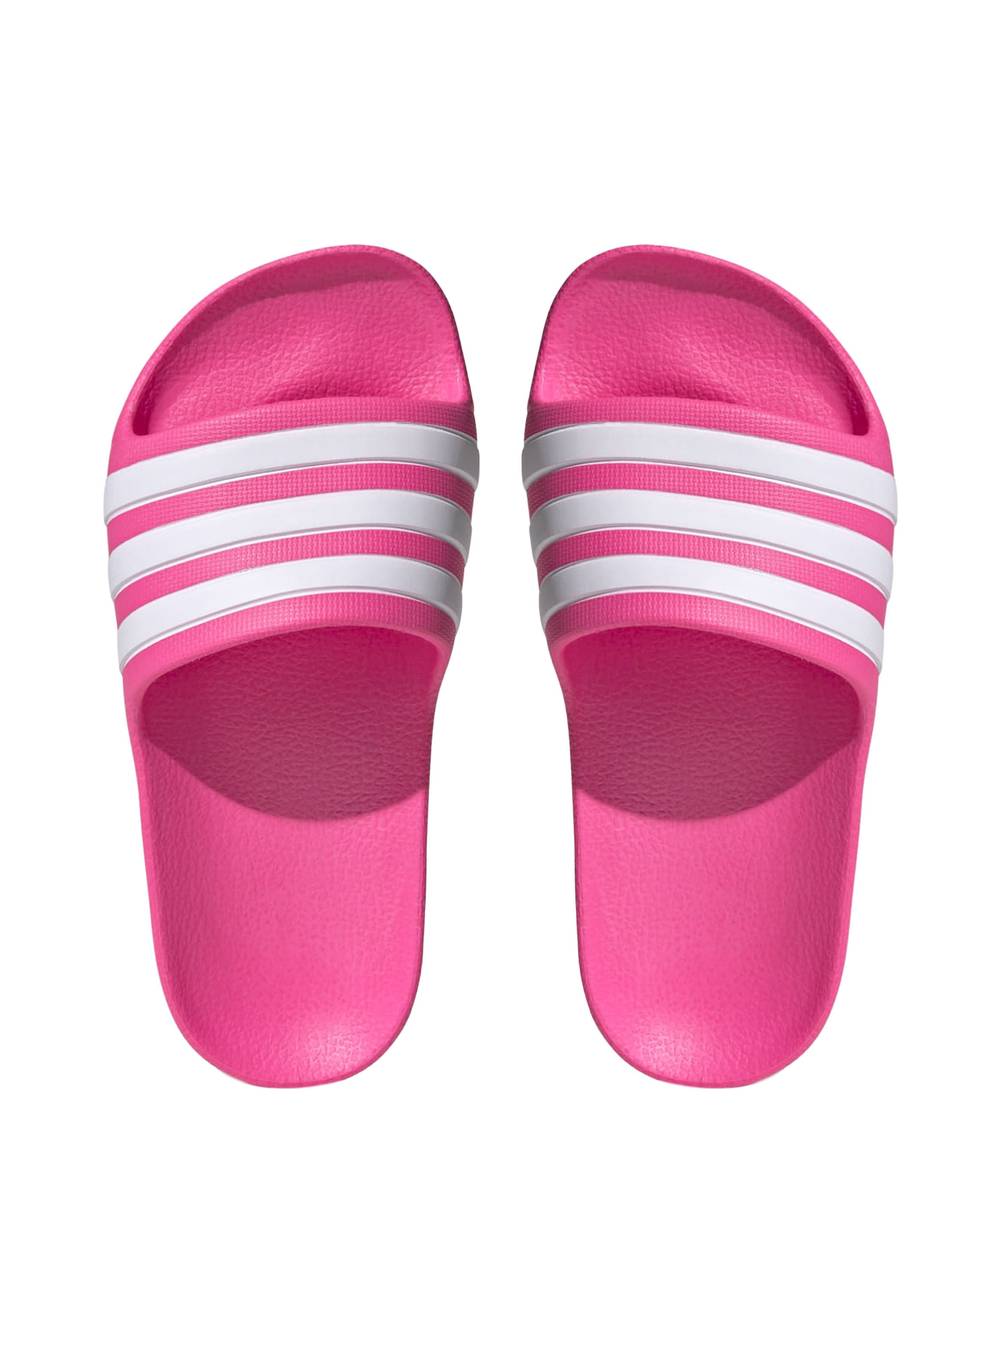 Adidas sandalia kinds adilette aqua unisex rosado 'n 6